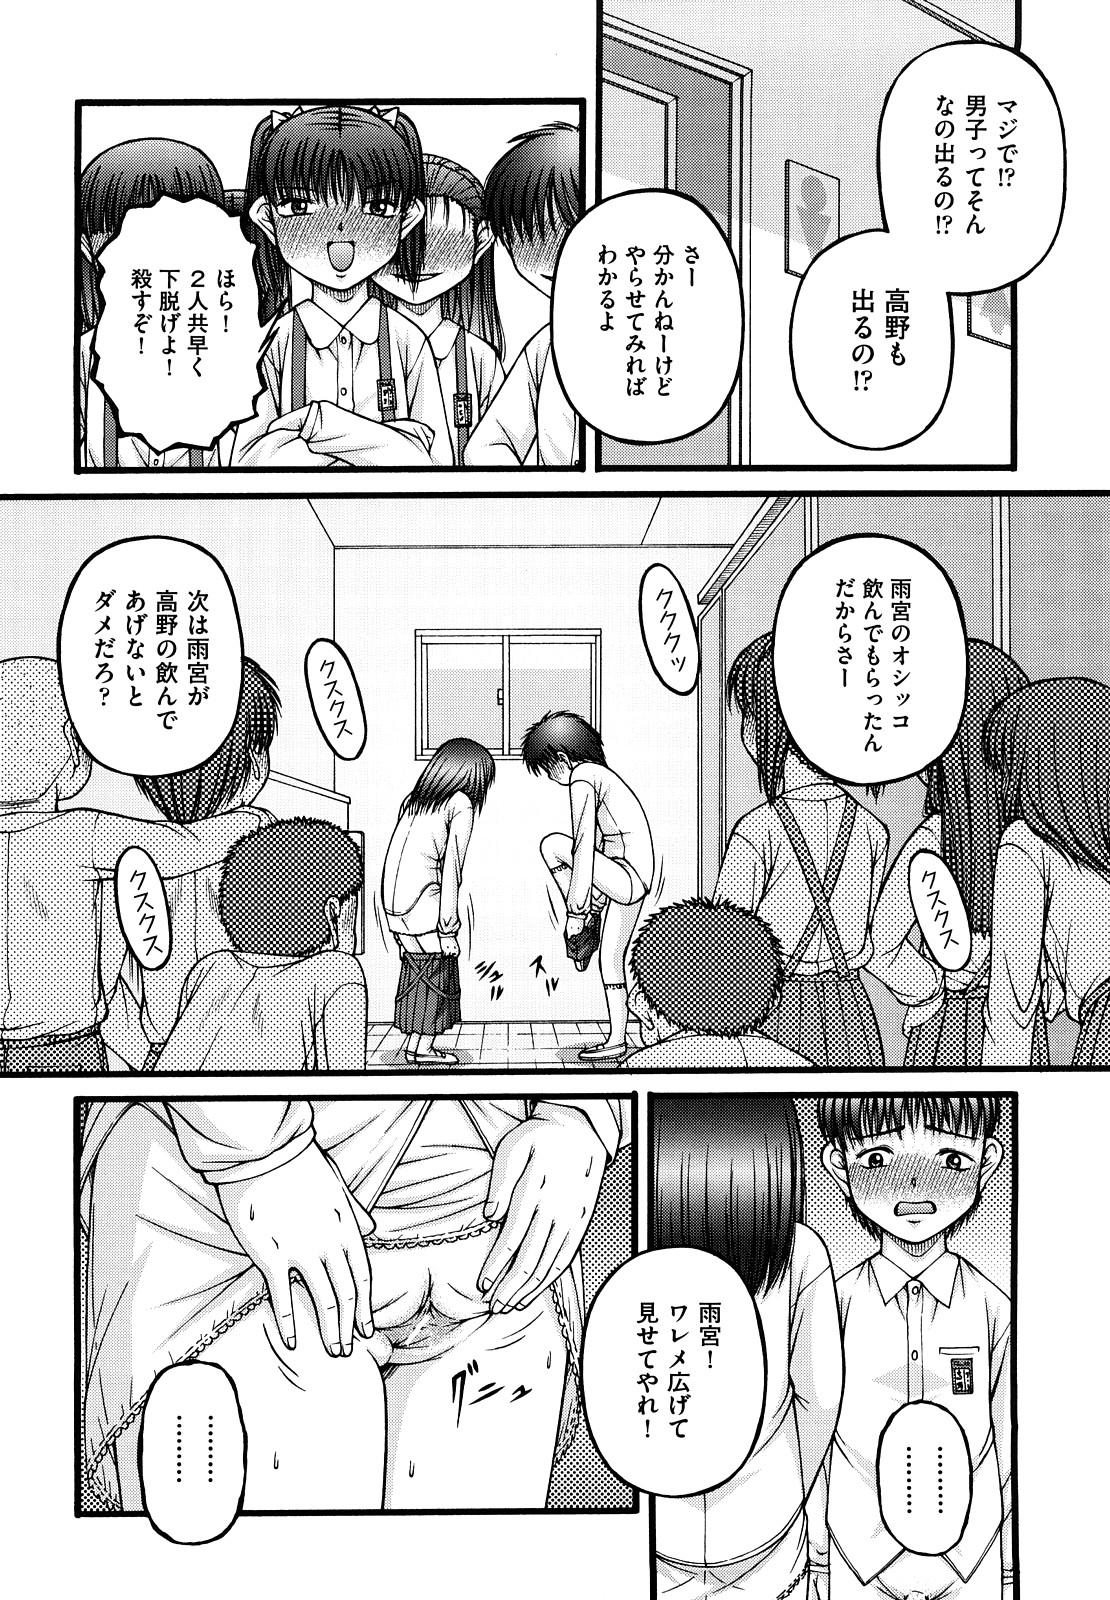 Shoujo Manga 146